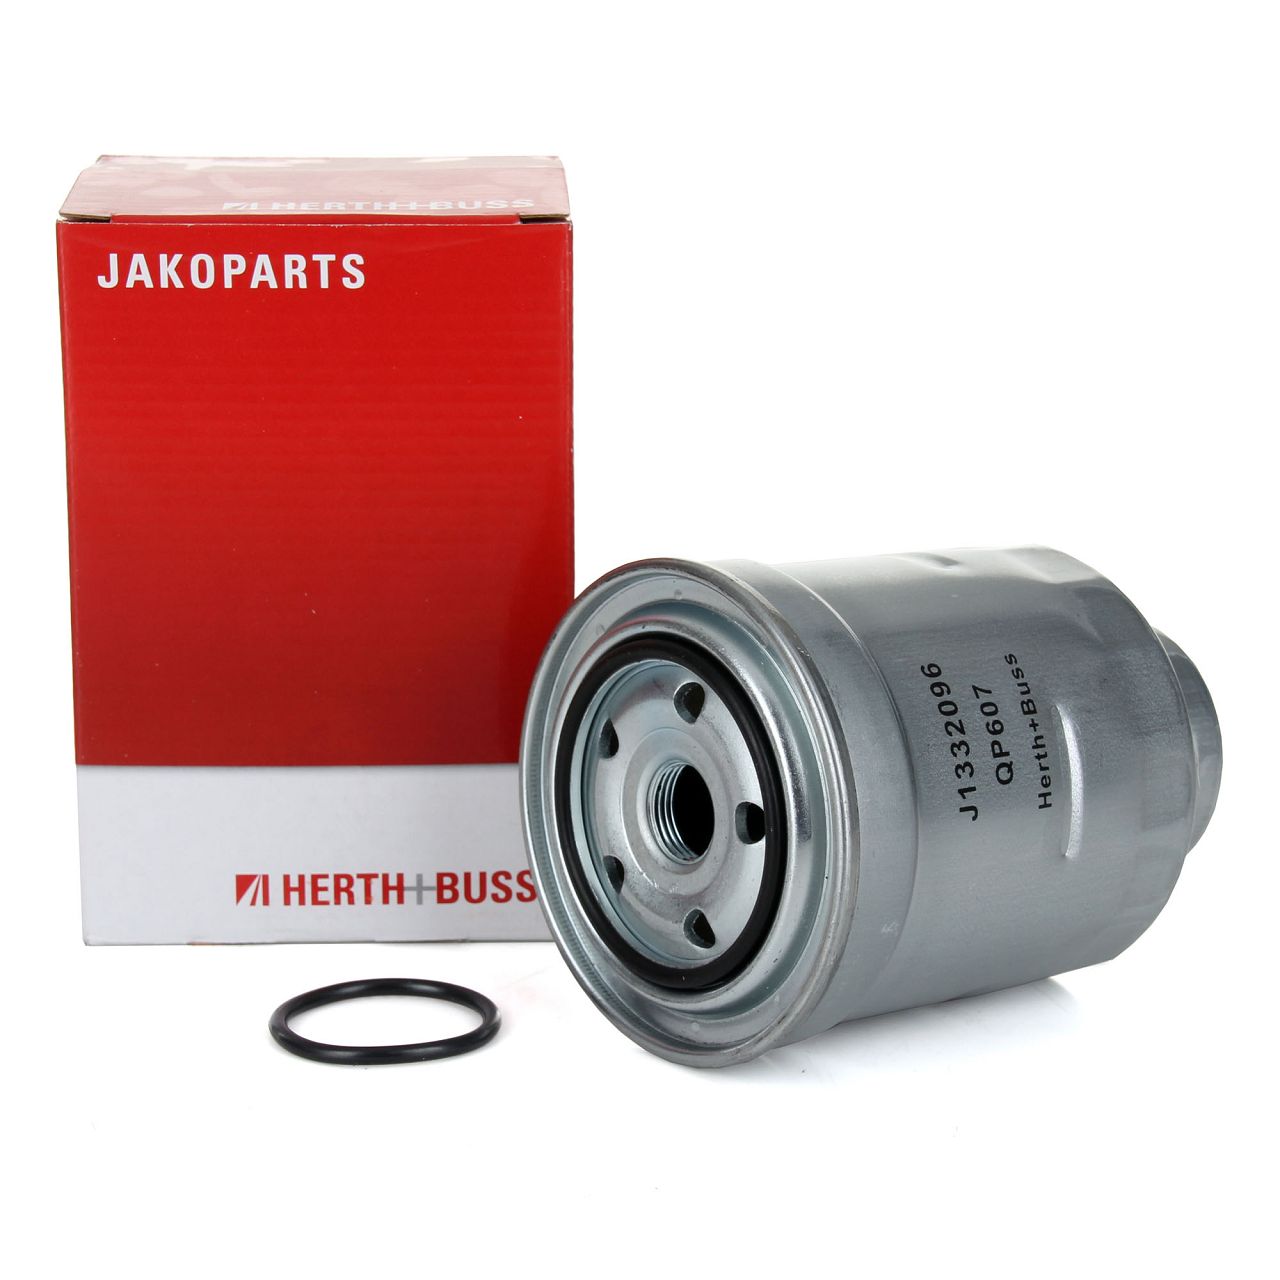 HERTH+BUSS JAKOPARTS Kraftstofffilter Dieselfilter für Toyota Auris Avensis